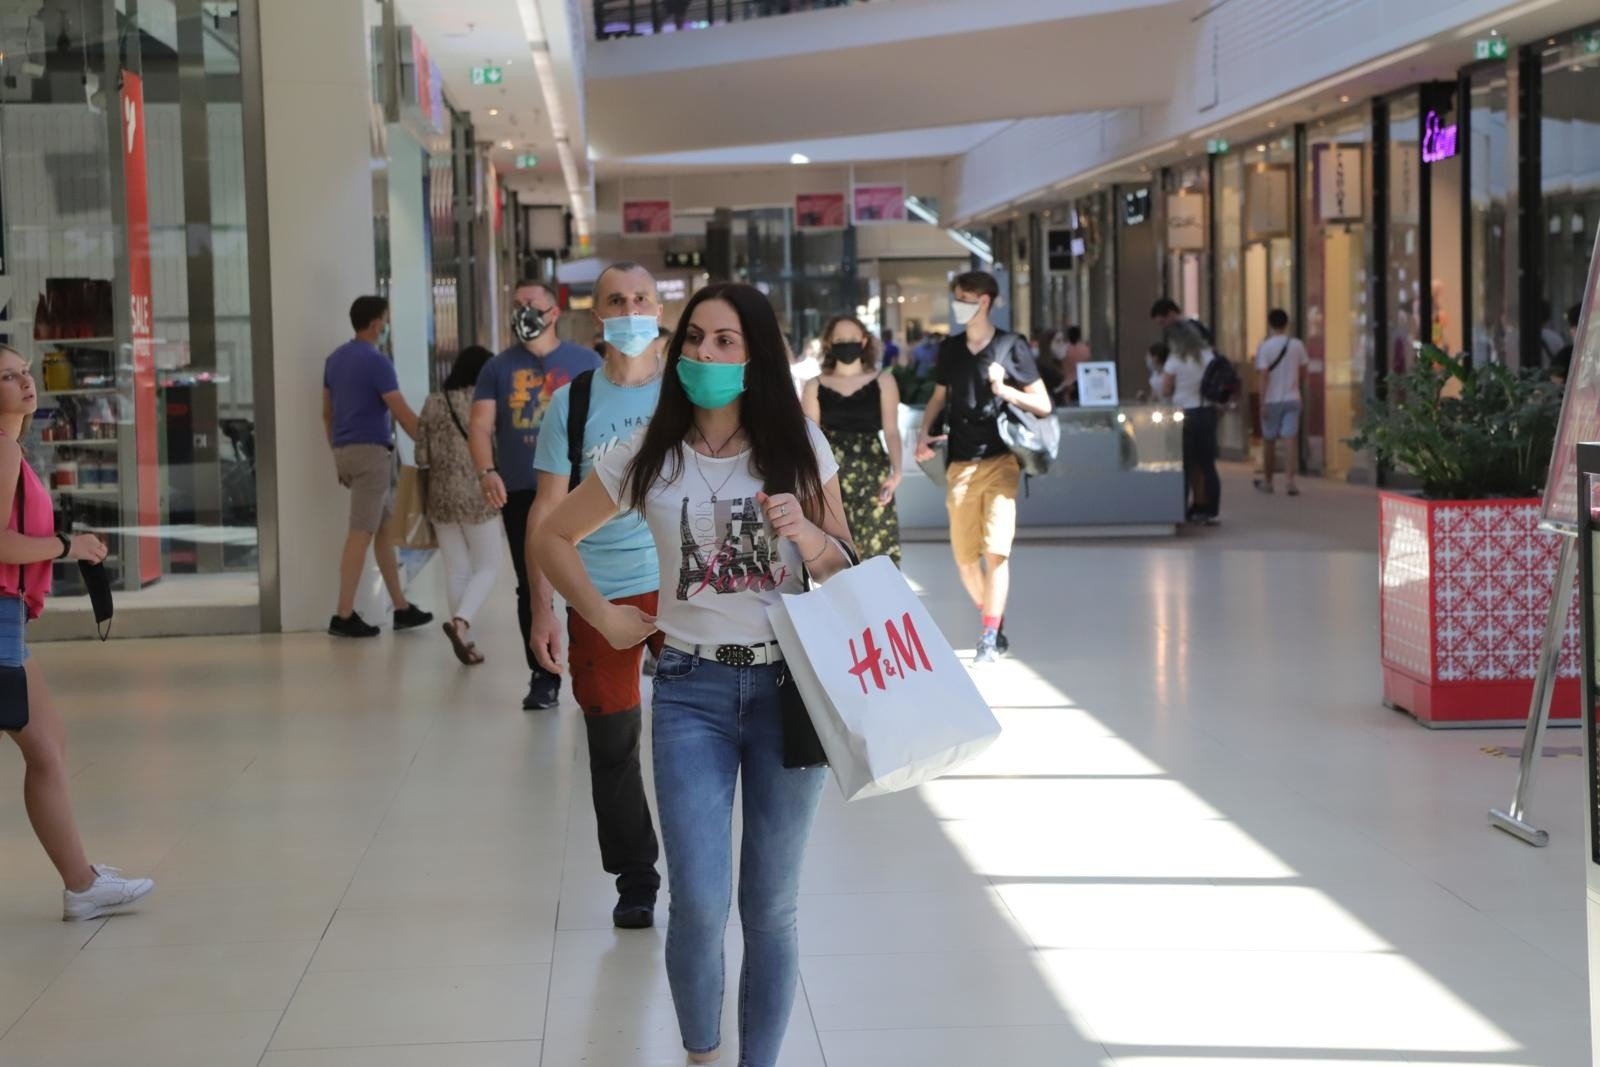 Przybywa pustych lokali w obiektach handlowych. Gigant odzieżowy H&M  planuje zamknąć 250 swoich placówek | Strefa Biznesu